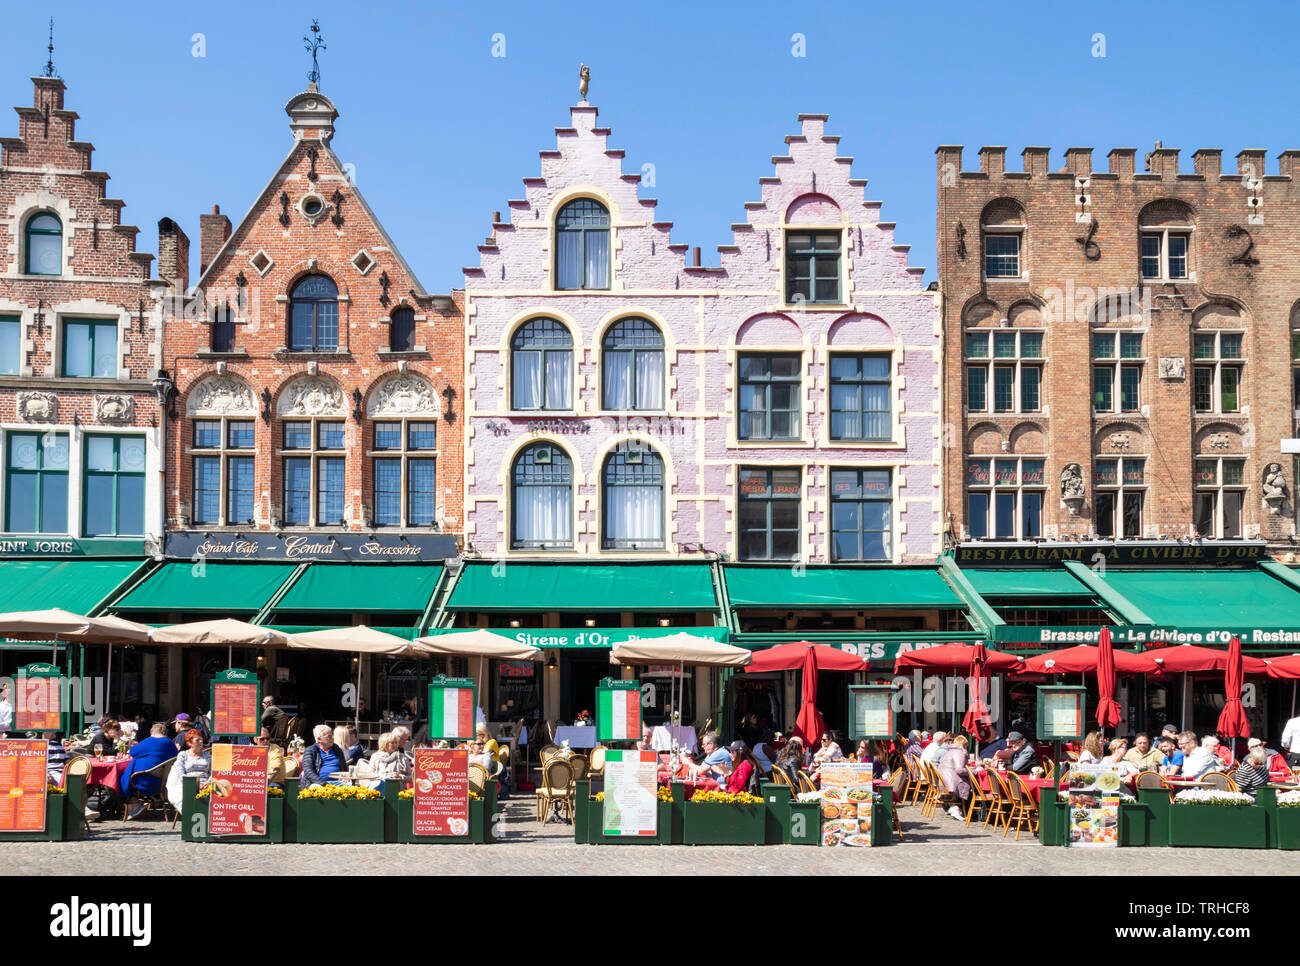 Maintenant les bâtiments anciens cafés et restaurants avec des pignons dans la place historique du marché dans le centre de Bruges Belgique Flandre occidentale eu Europe Banque D'Images